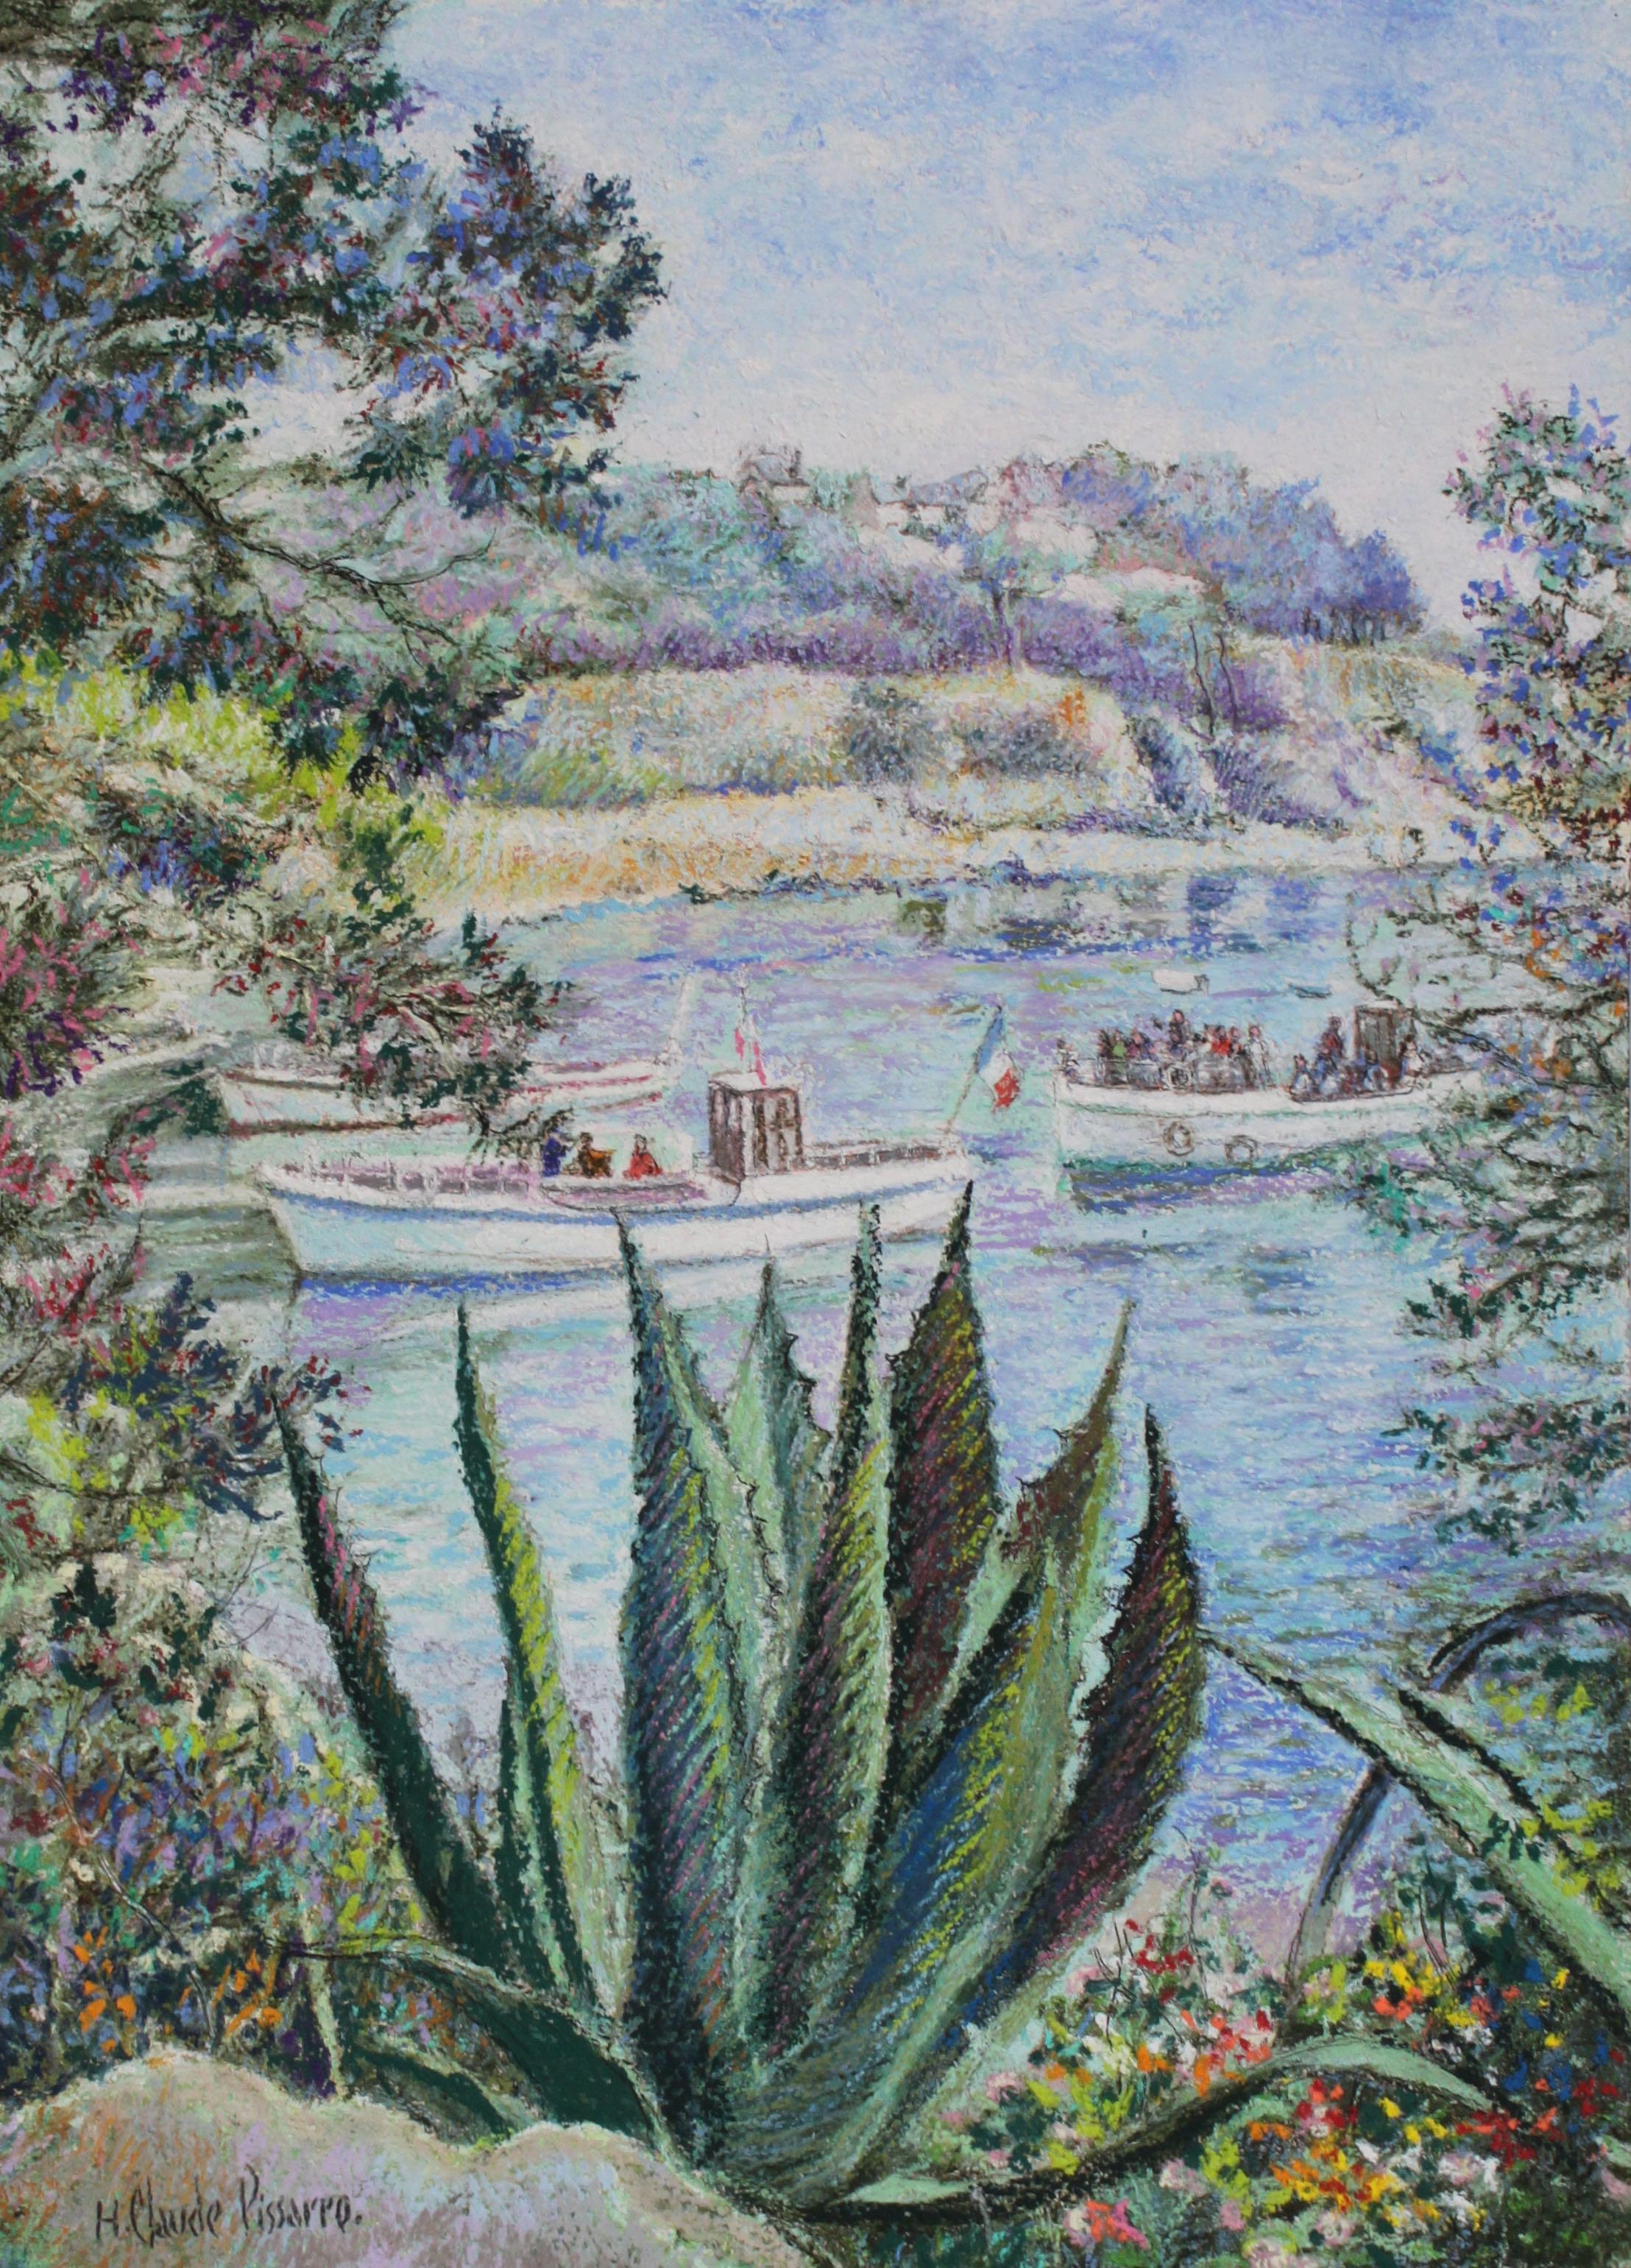 L'Aloés de la Calanque - Bréhat by H. Claude Pissarro - Landscape painting